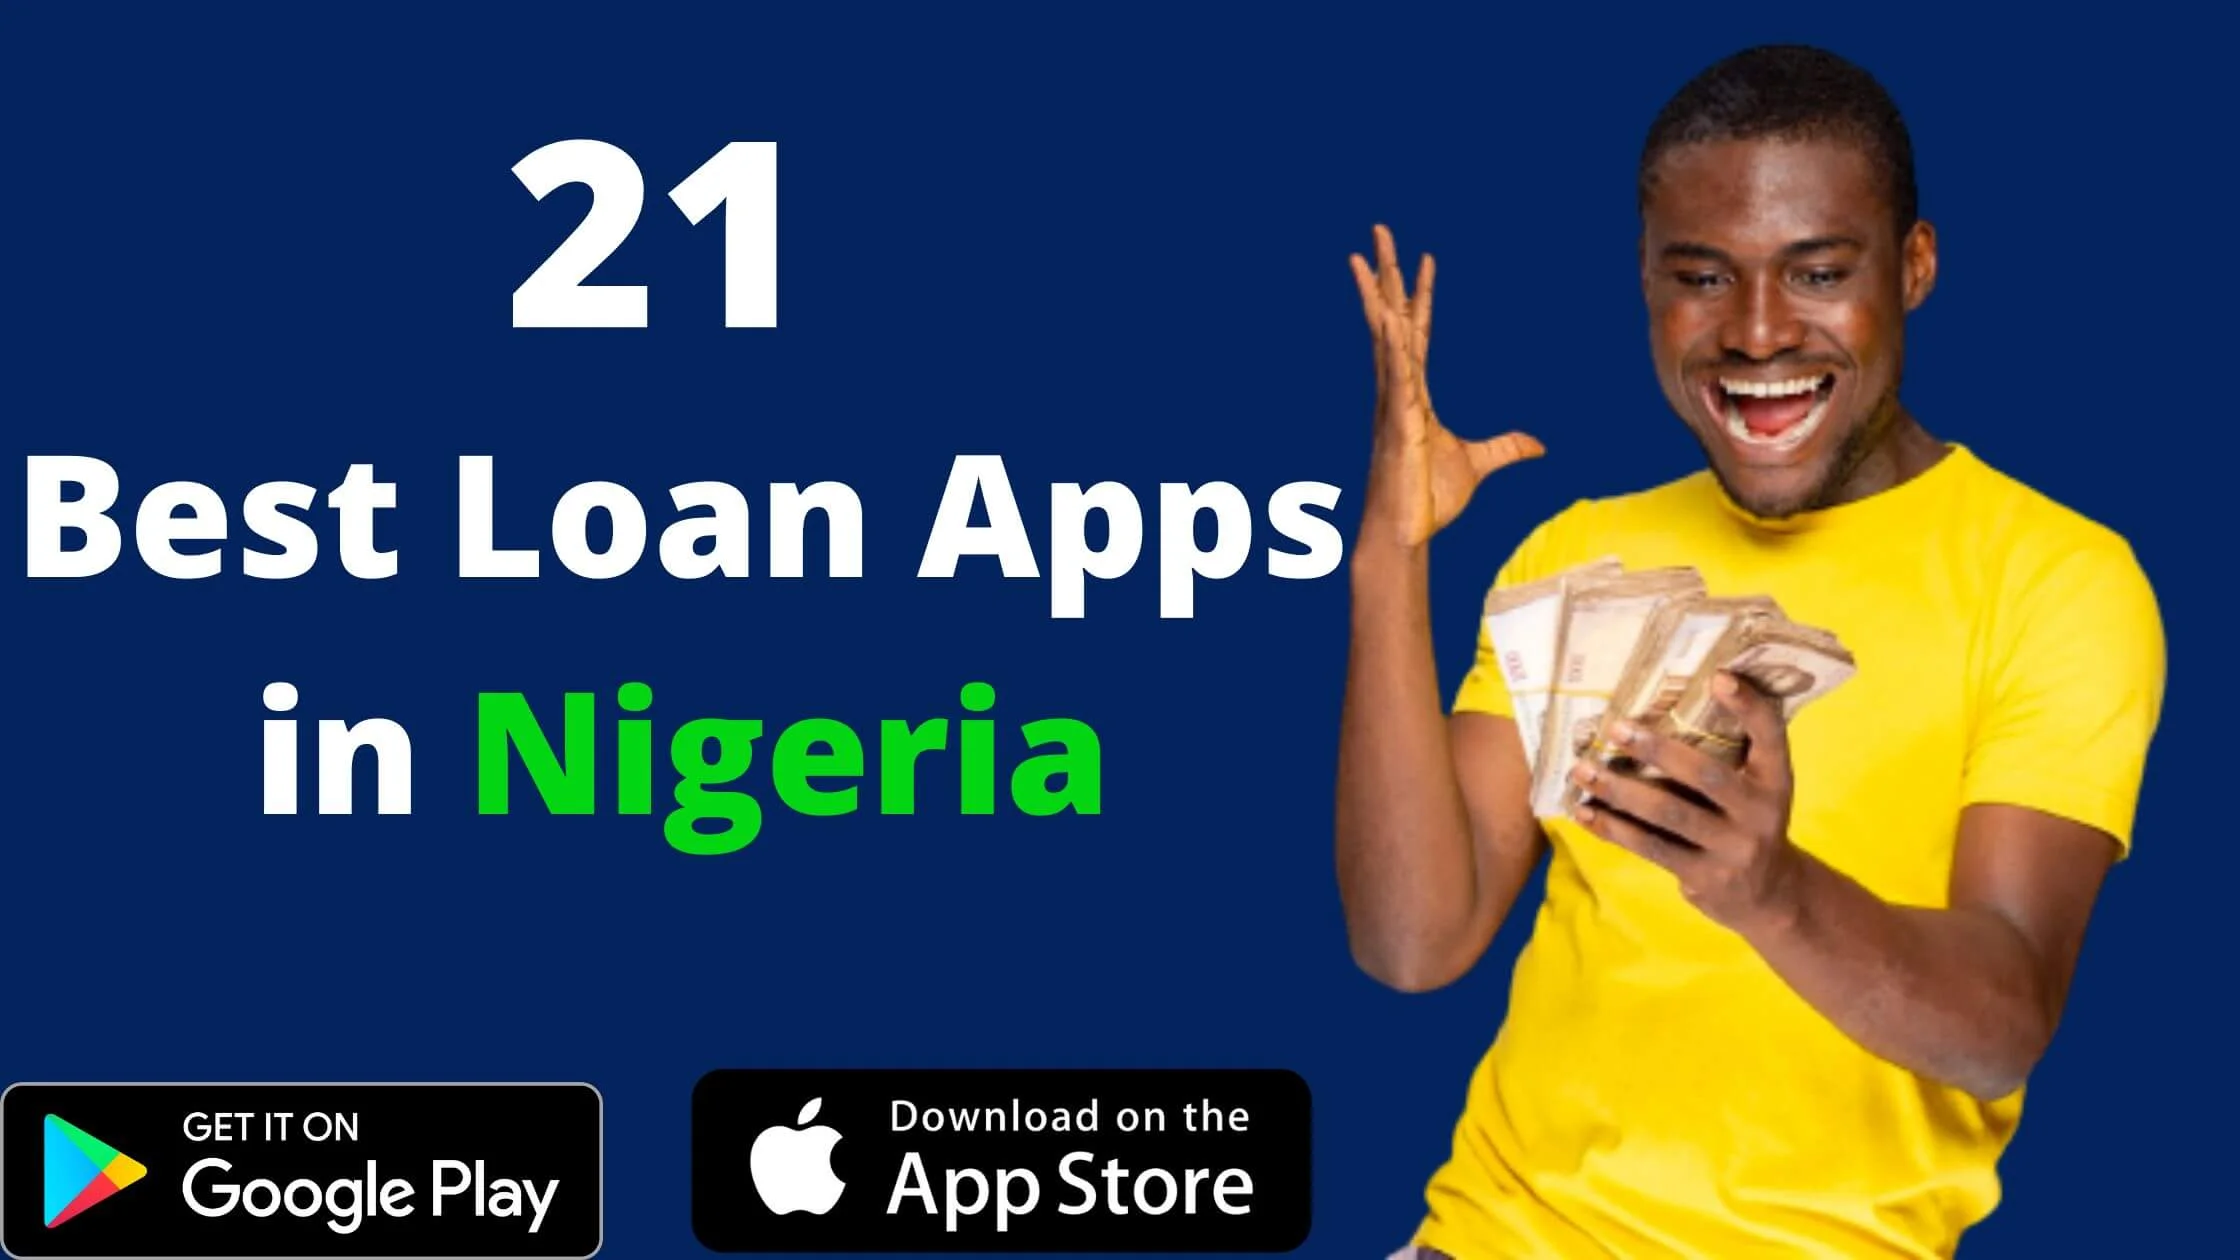 Loan Apps in Nigeria